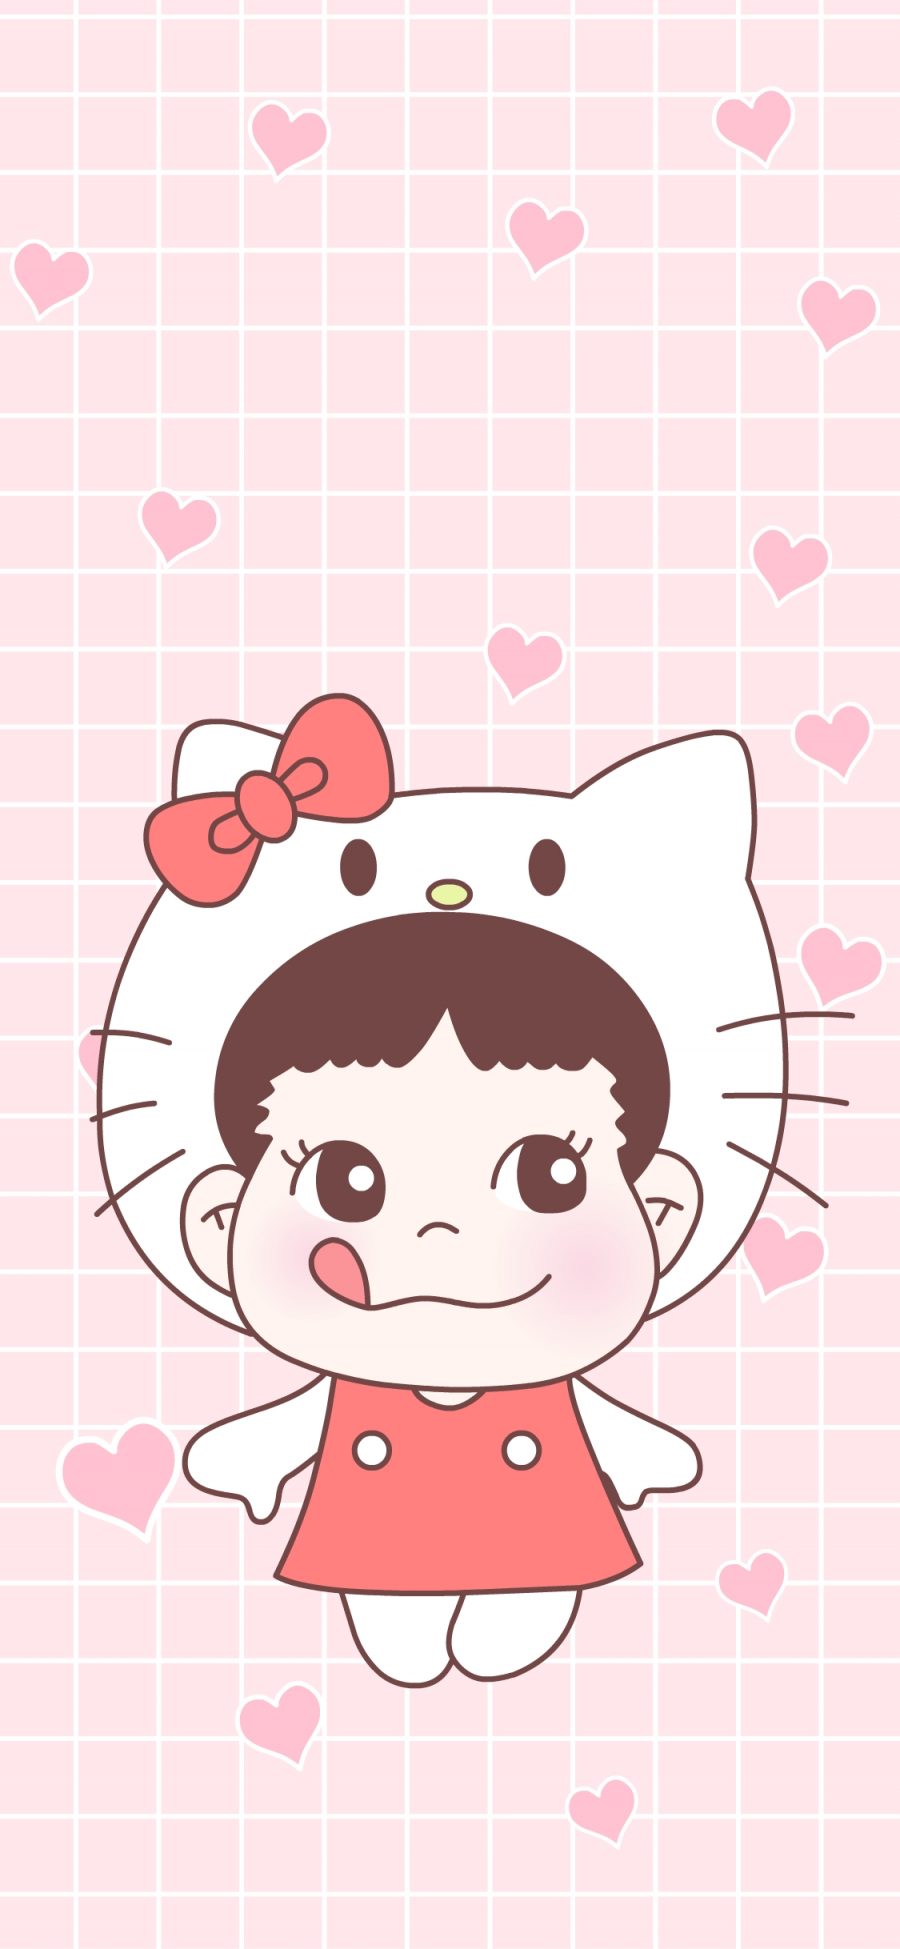 [2436×1125]糖不二 甜妞 可爱 卡通 粉色 爱心 Kitty猫 苹果手机动漫壁纸图片